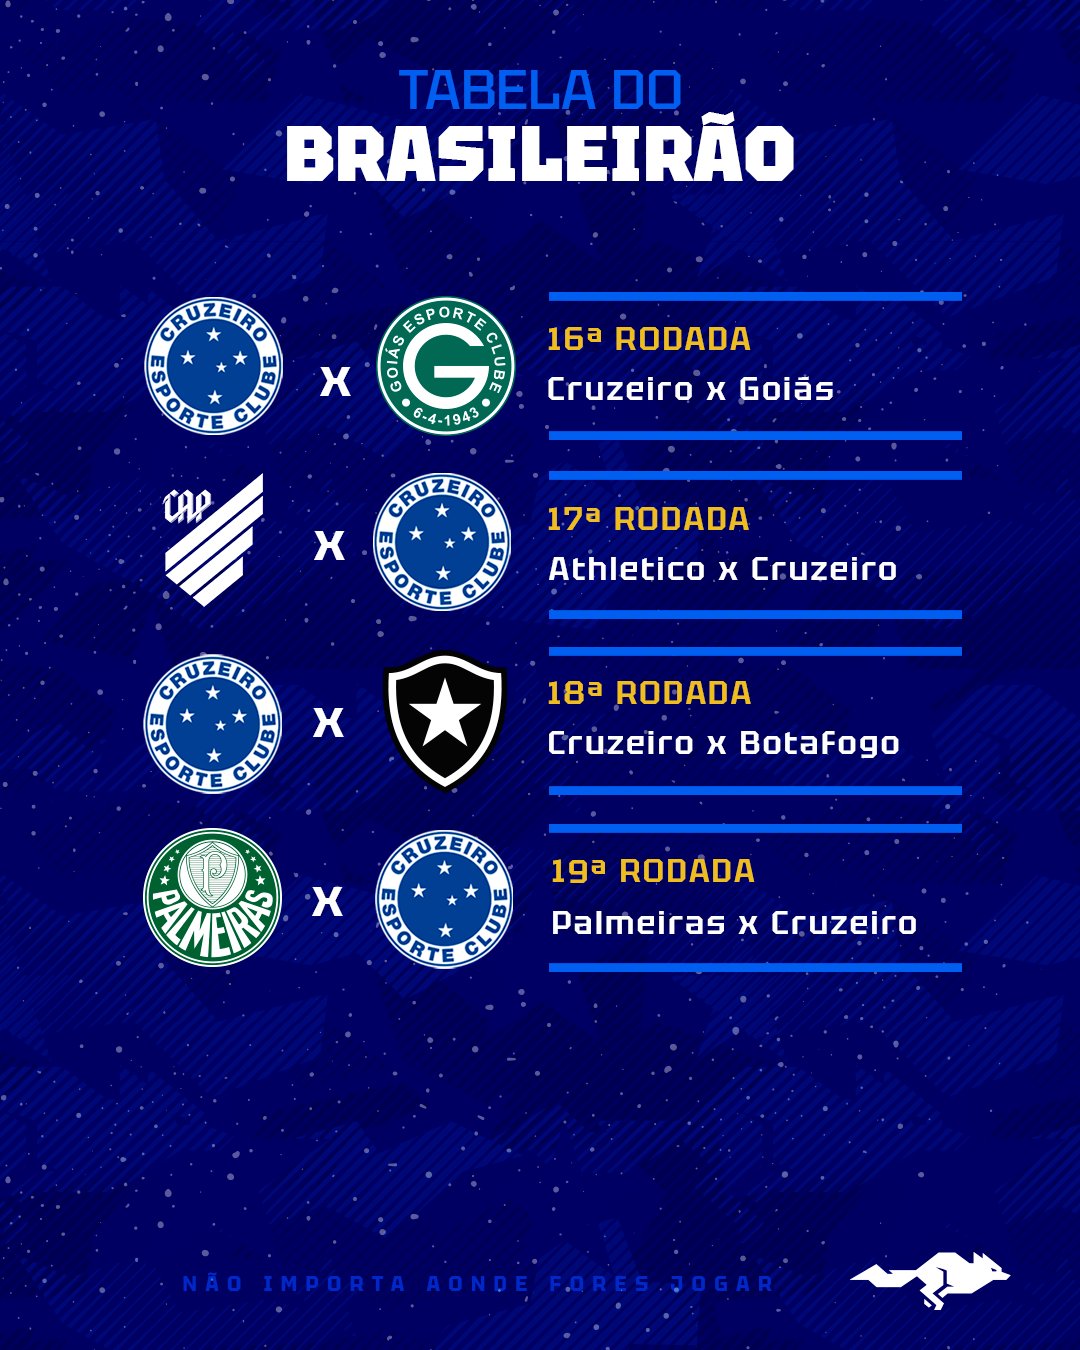 Brasileirão 2023: jogos dos times mineiros